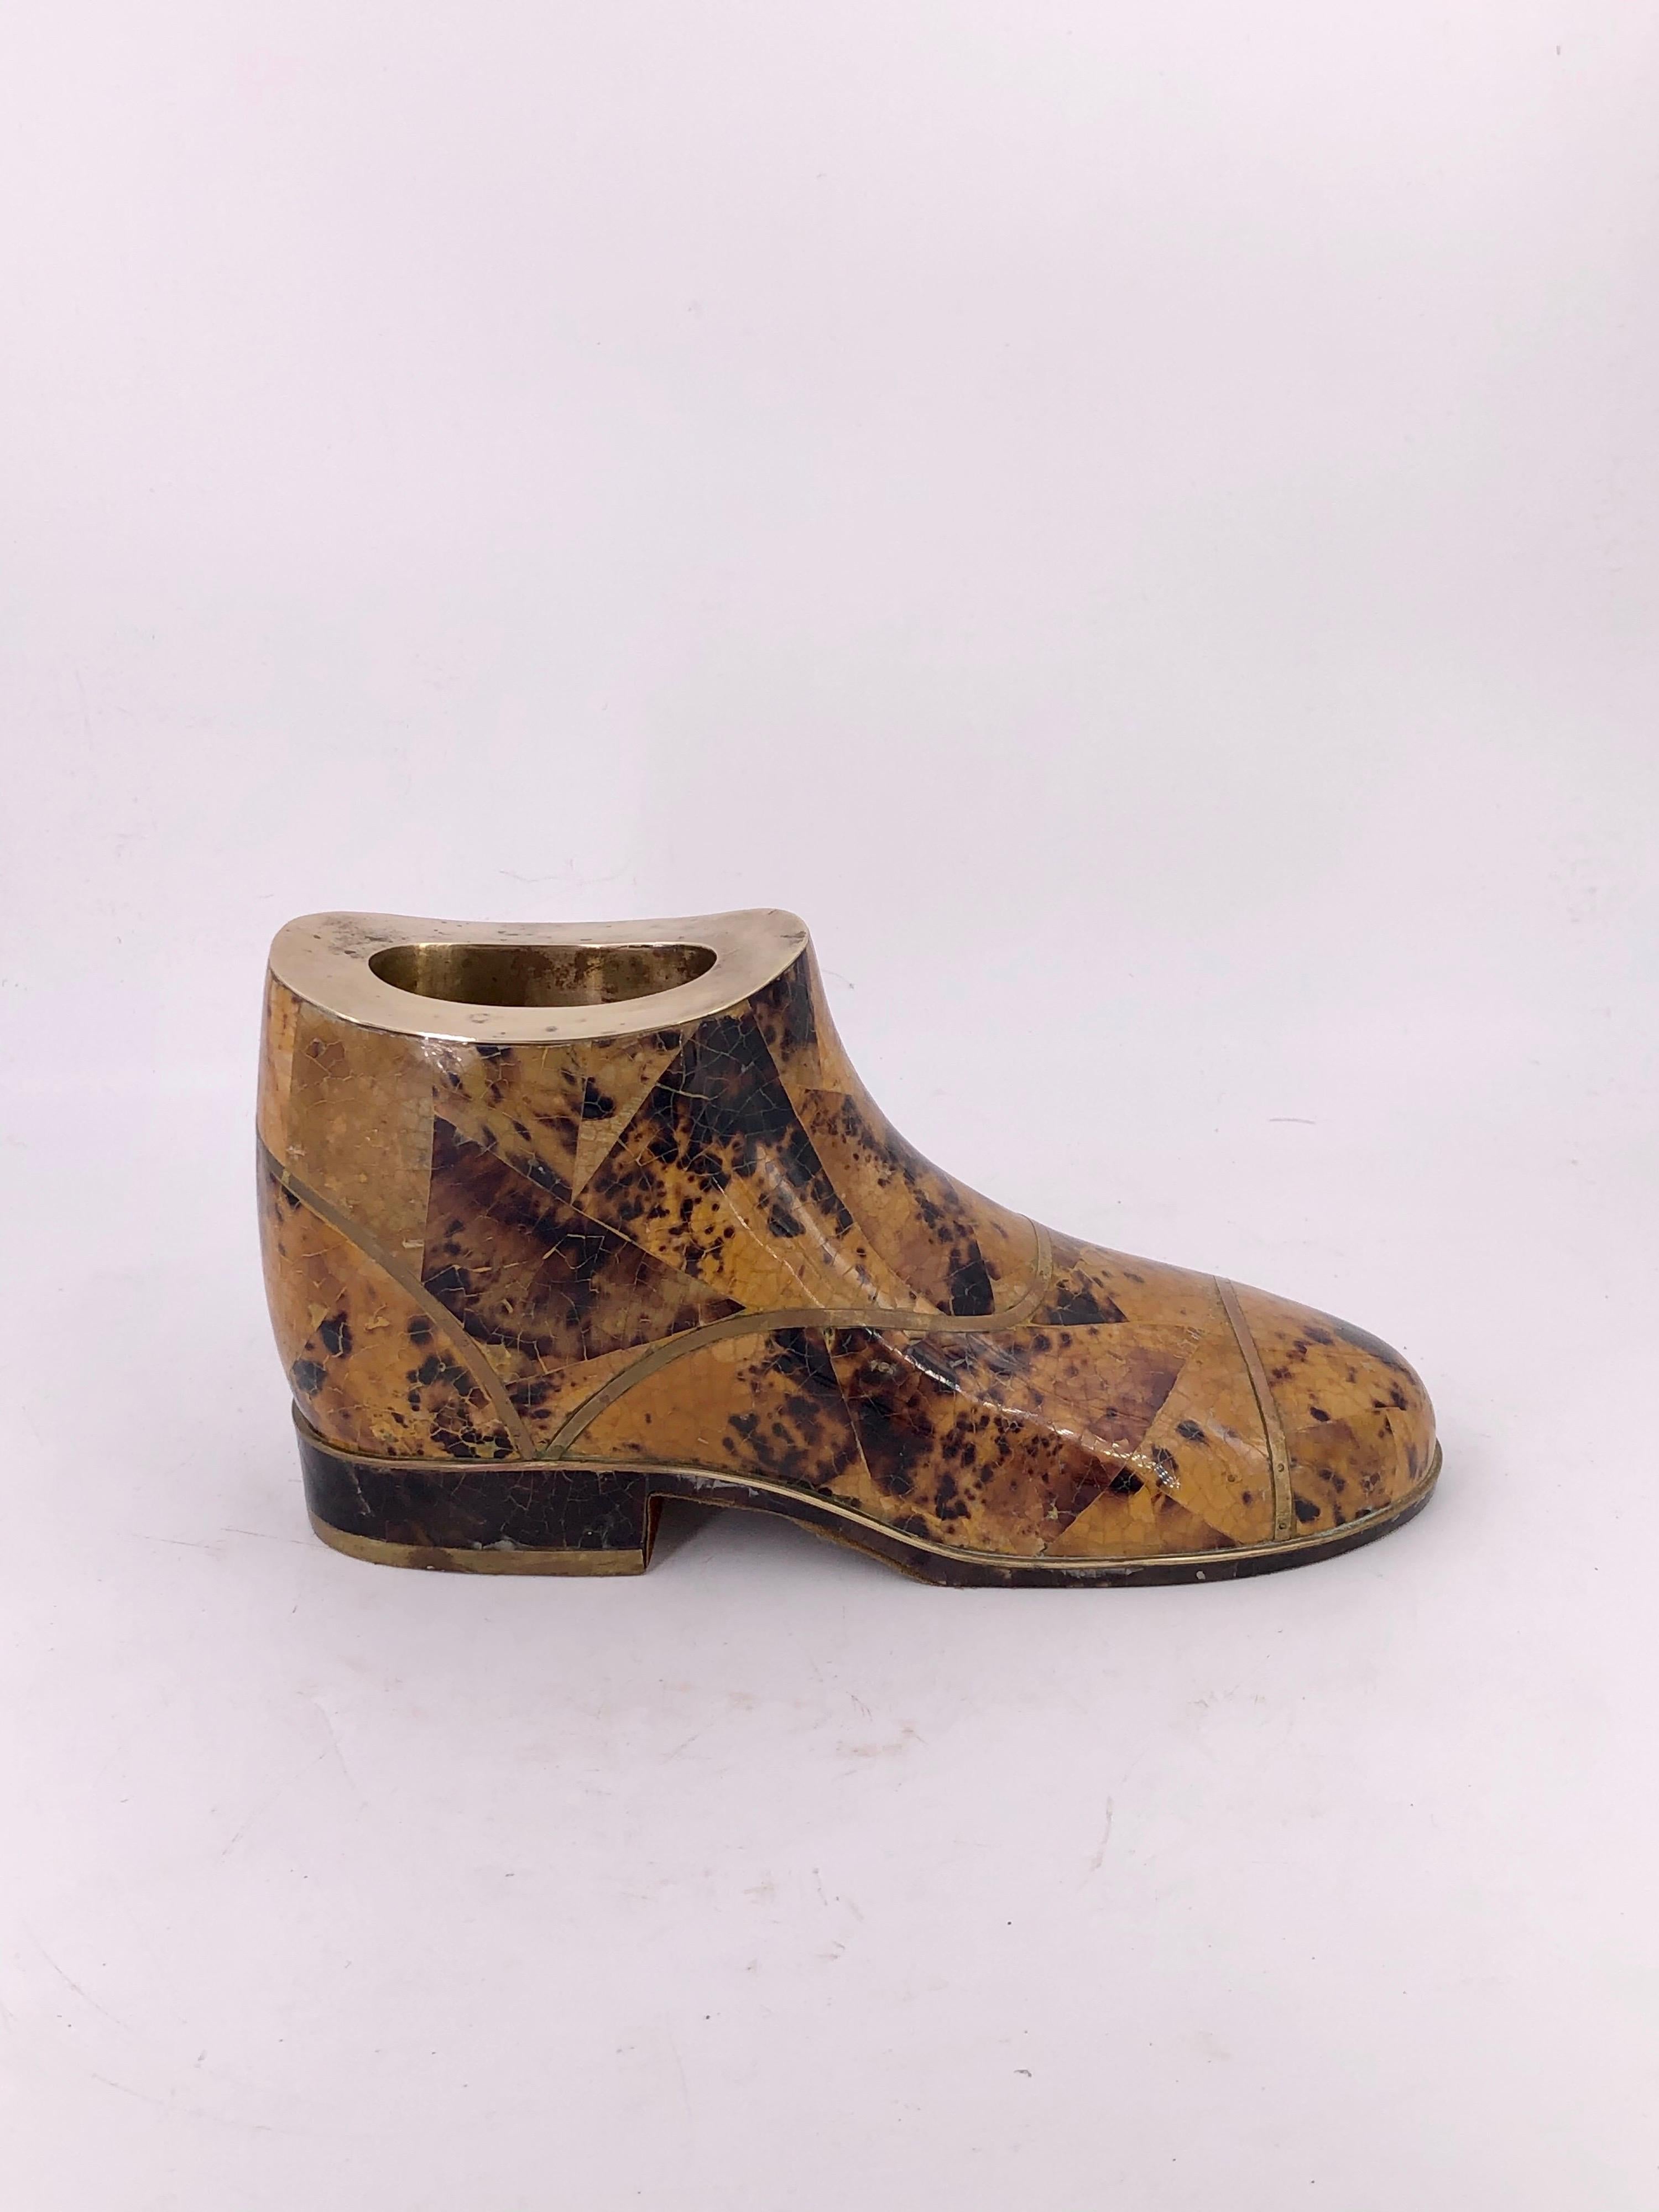 Schöne und seltene dekorative Stiefel in Mosaik Stein von Maitland Smith, ca. 1970er Jahre schön patiniert Messing eingelegt kann verwendet werden, um Taschengeld oder Aschenbecher, etc. setzen.